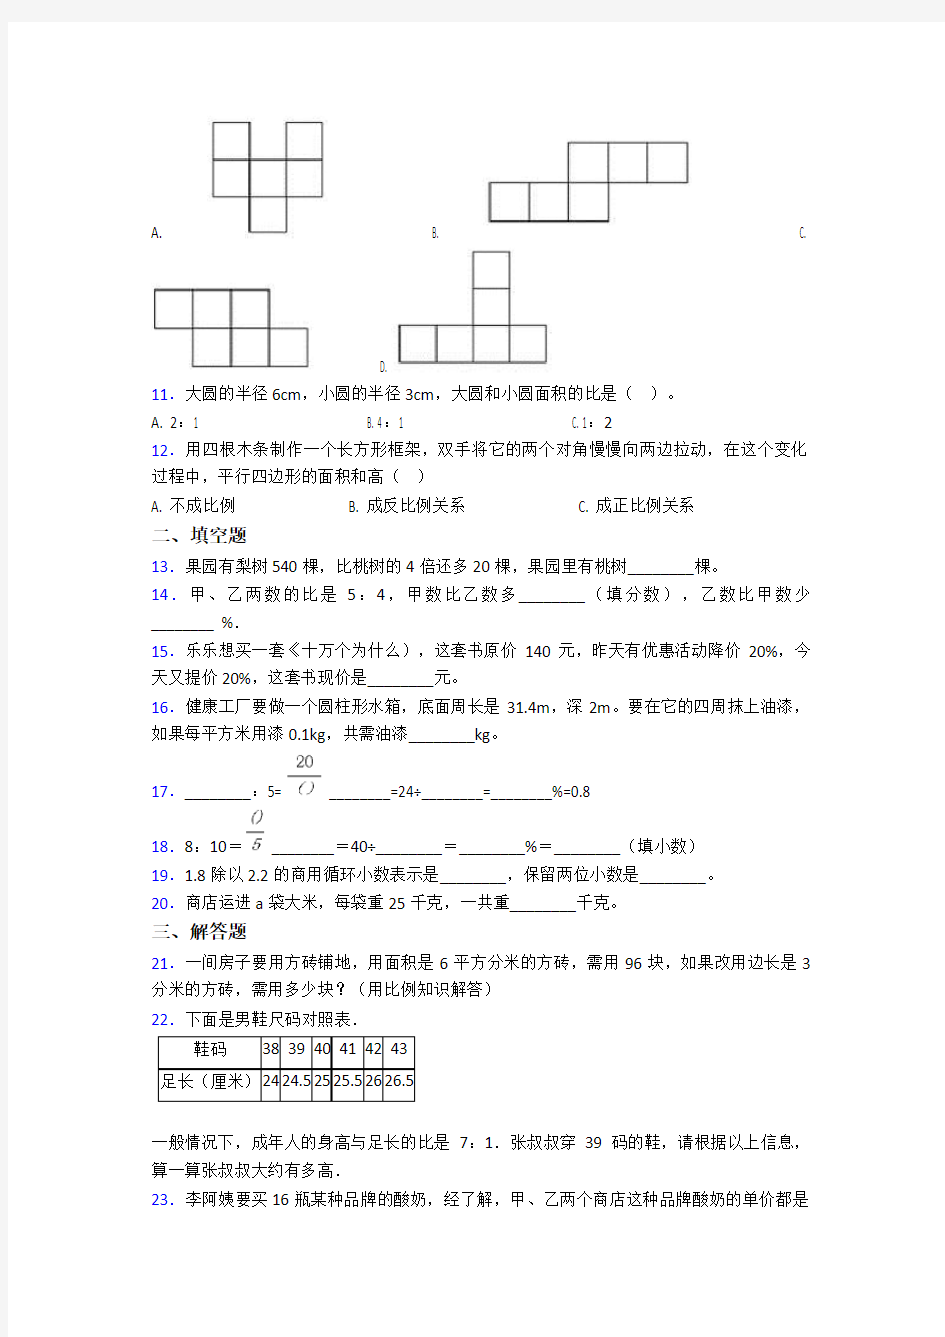 【常考题】小学数学小升初试题(附答案)